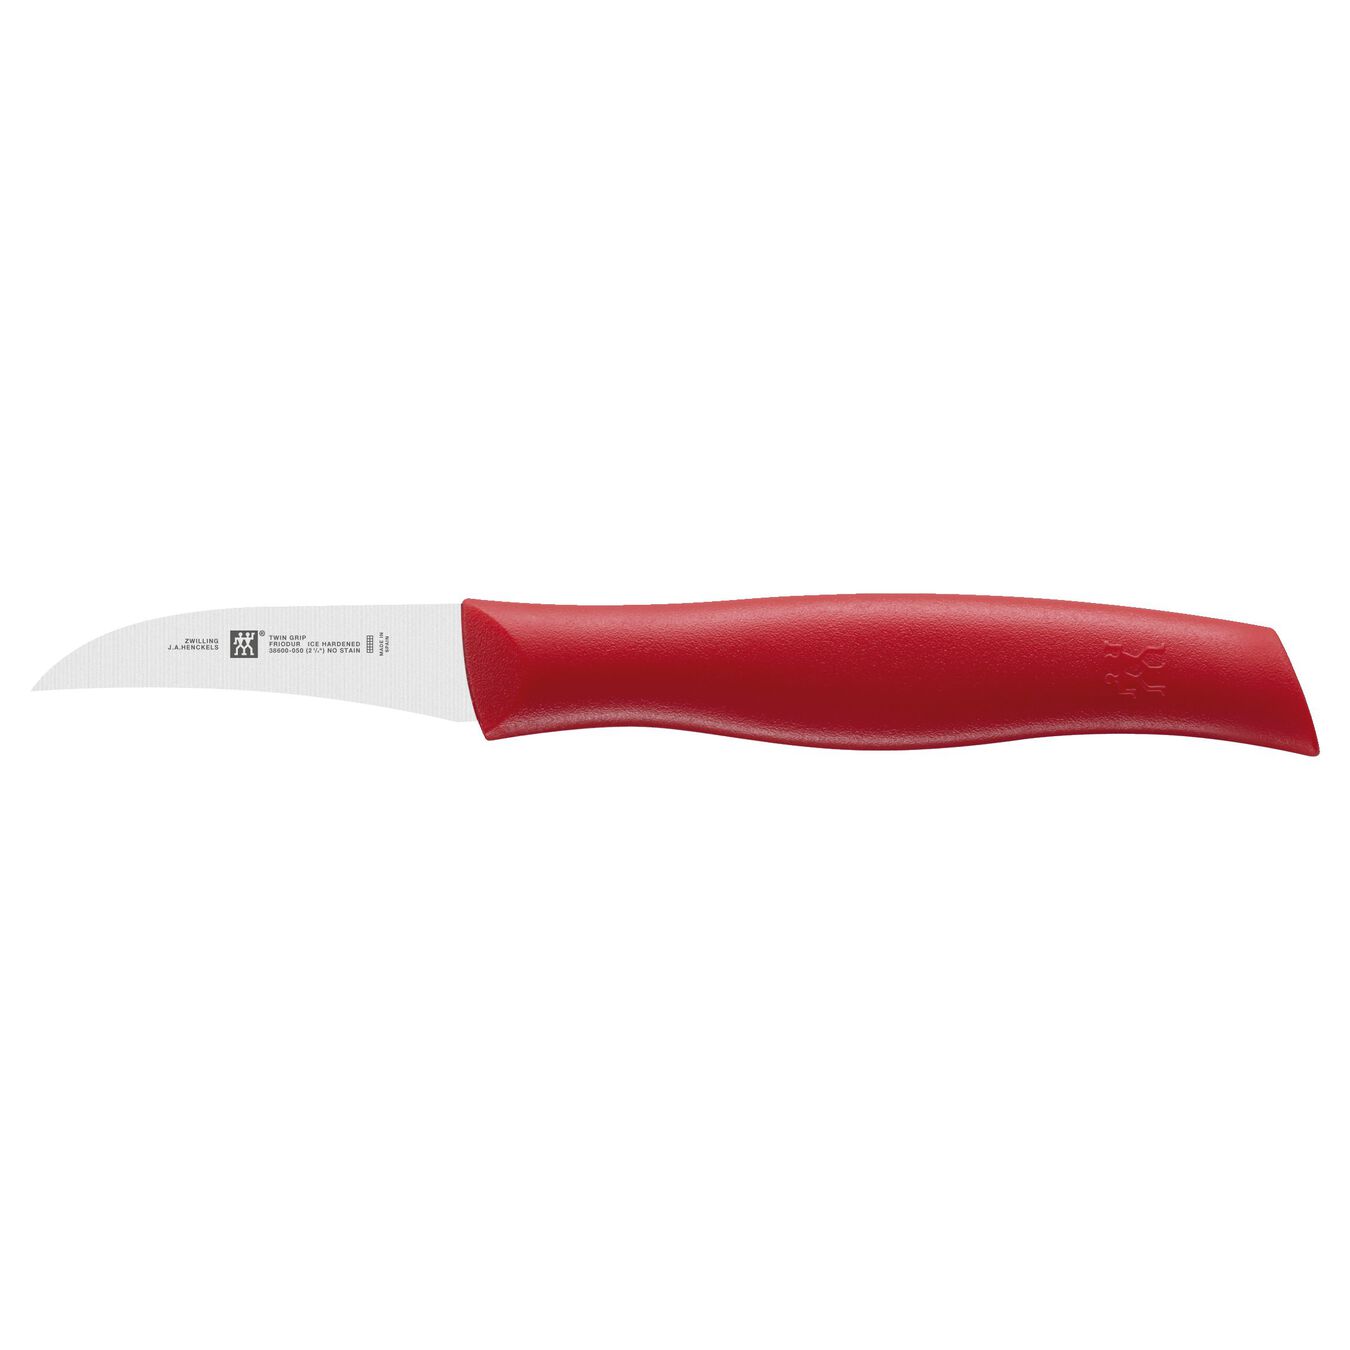 Tournier / Skalkniv böjd 5 cm, Röd,,large 2